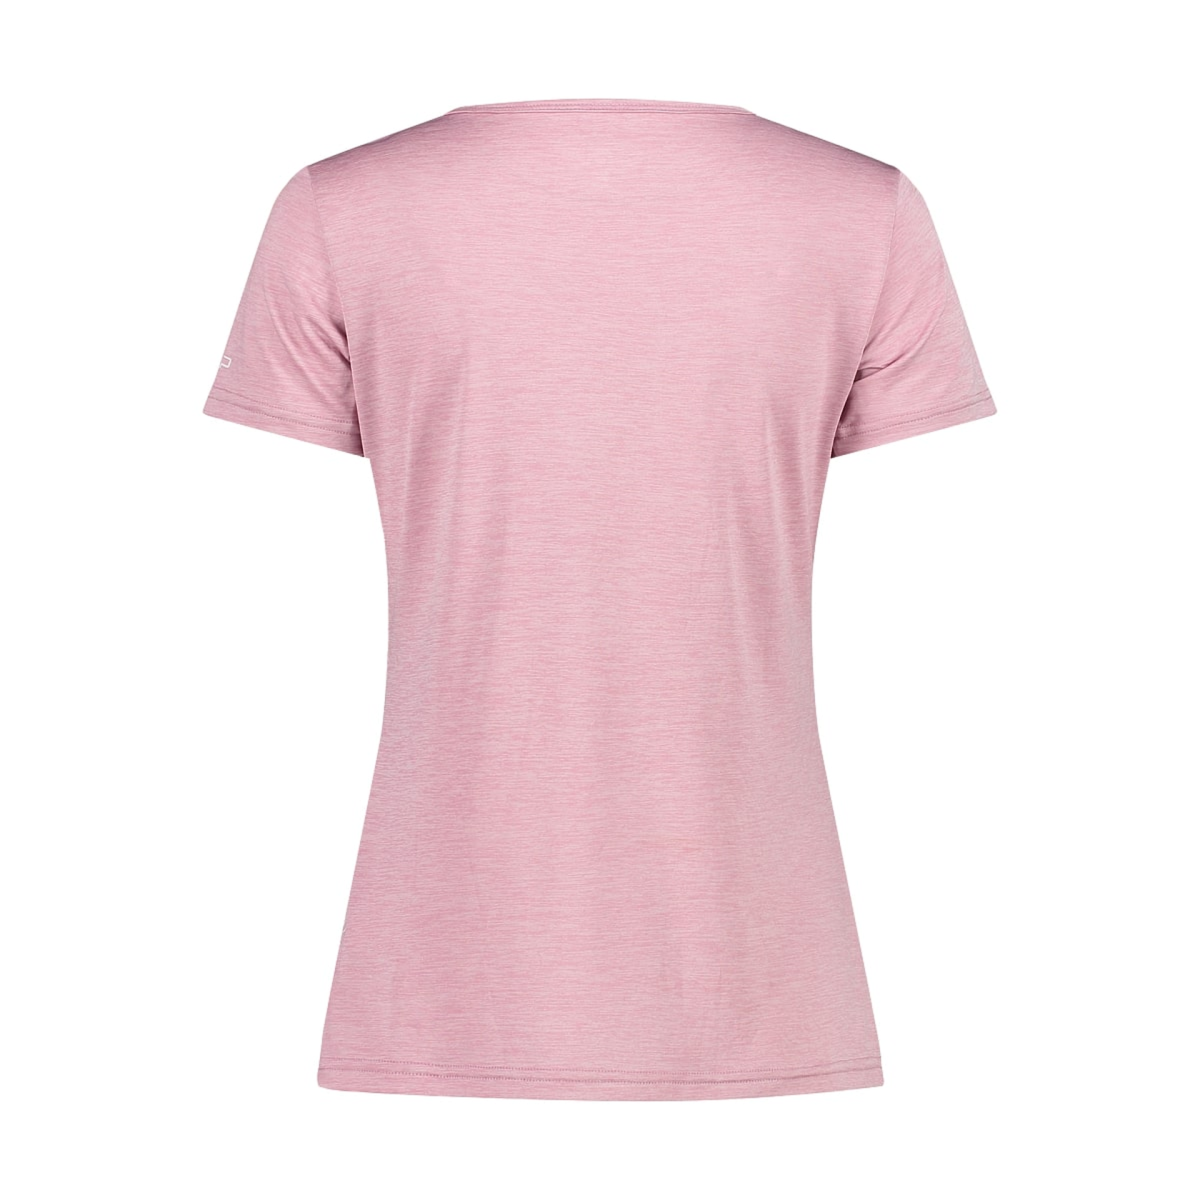 CMP Damen Shirt Light Jersey Print Shirt 39T6136 fard meliert